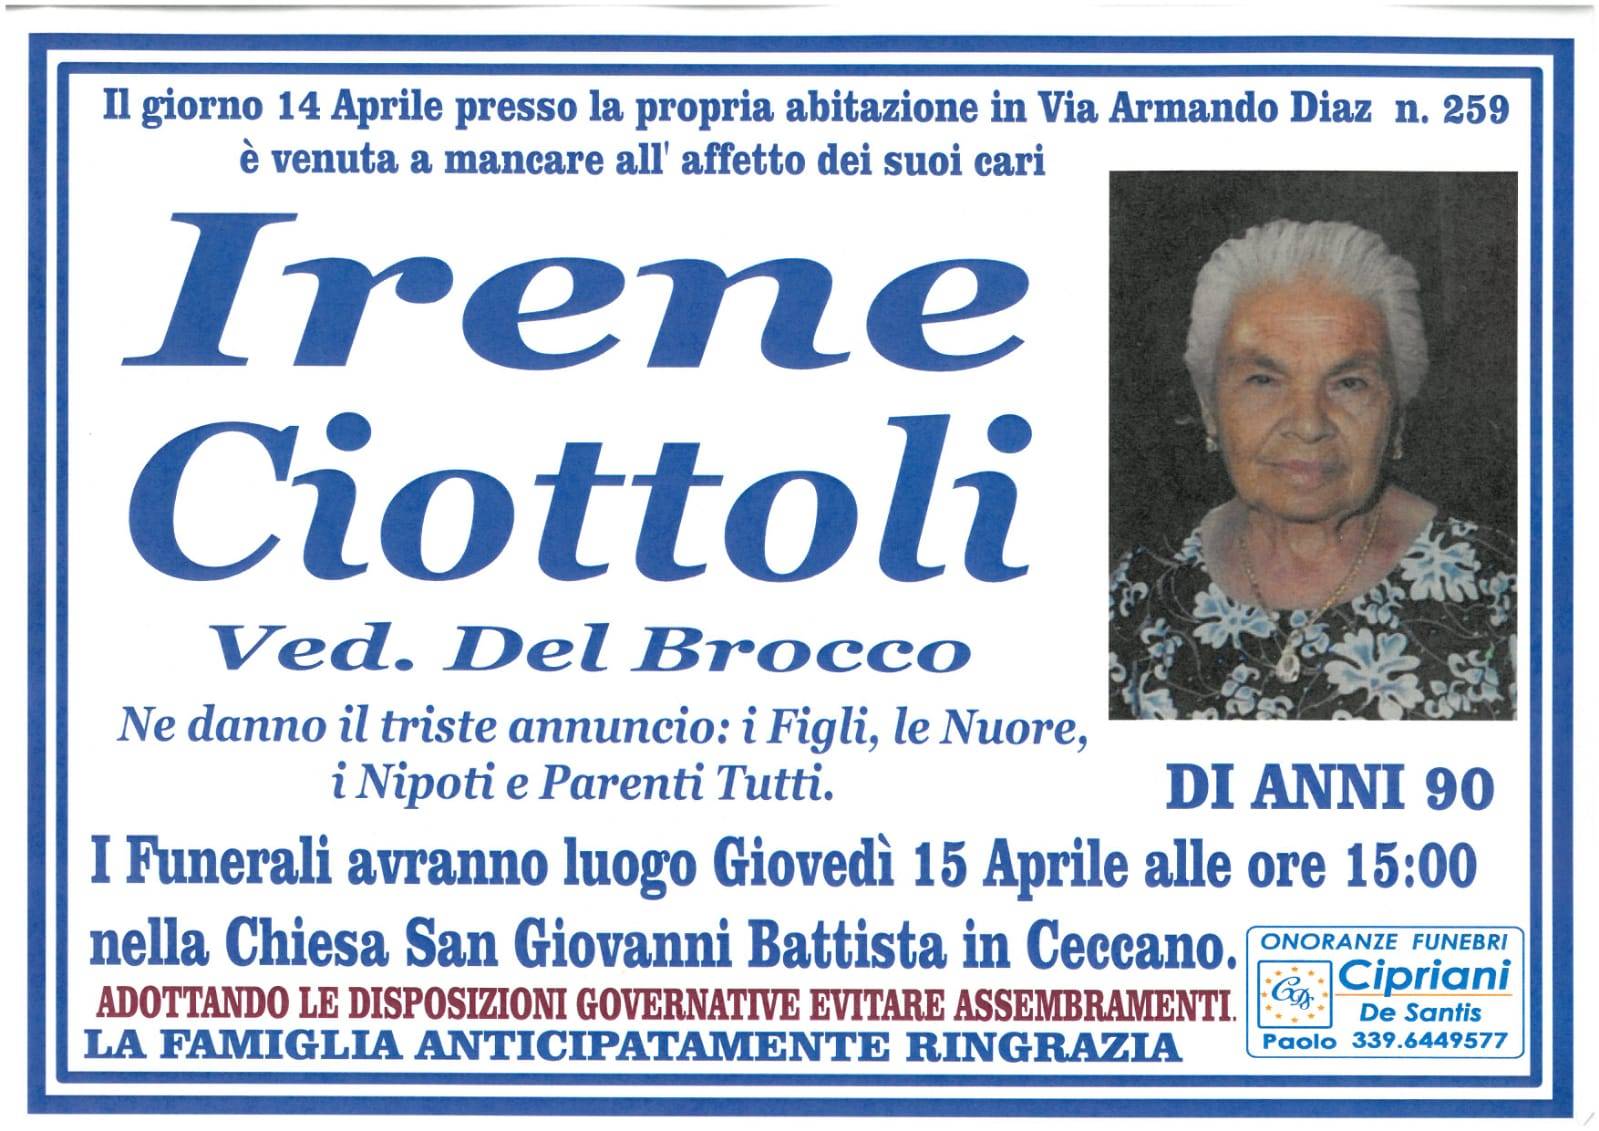 Irene Ciottoli